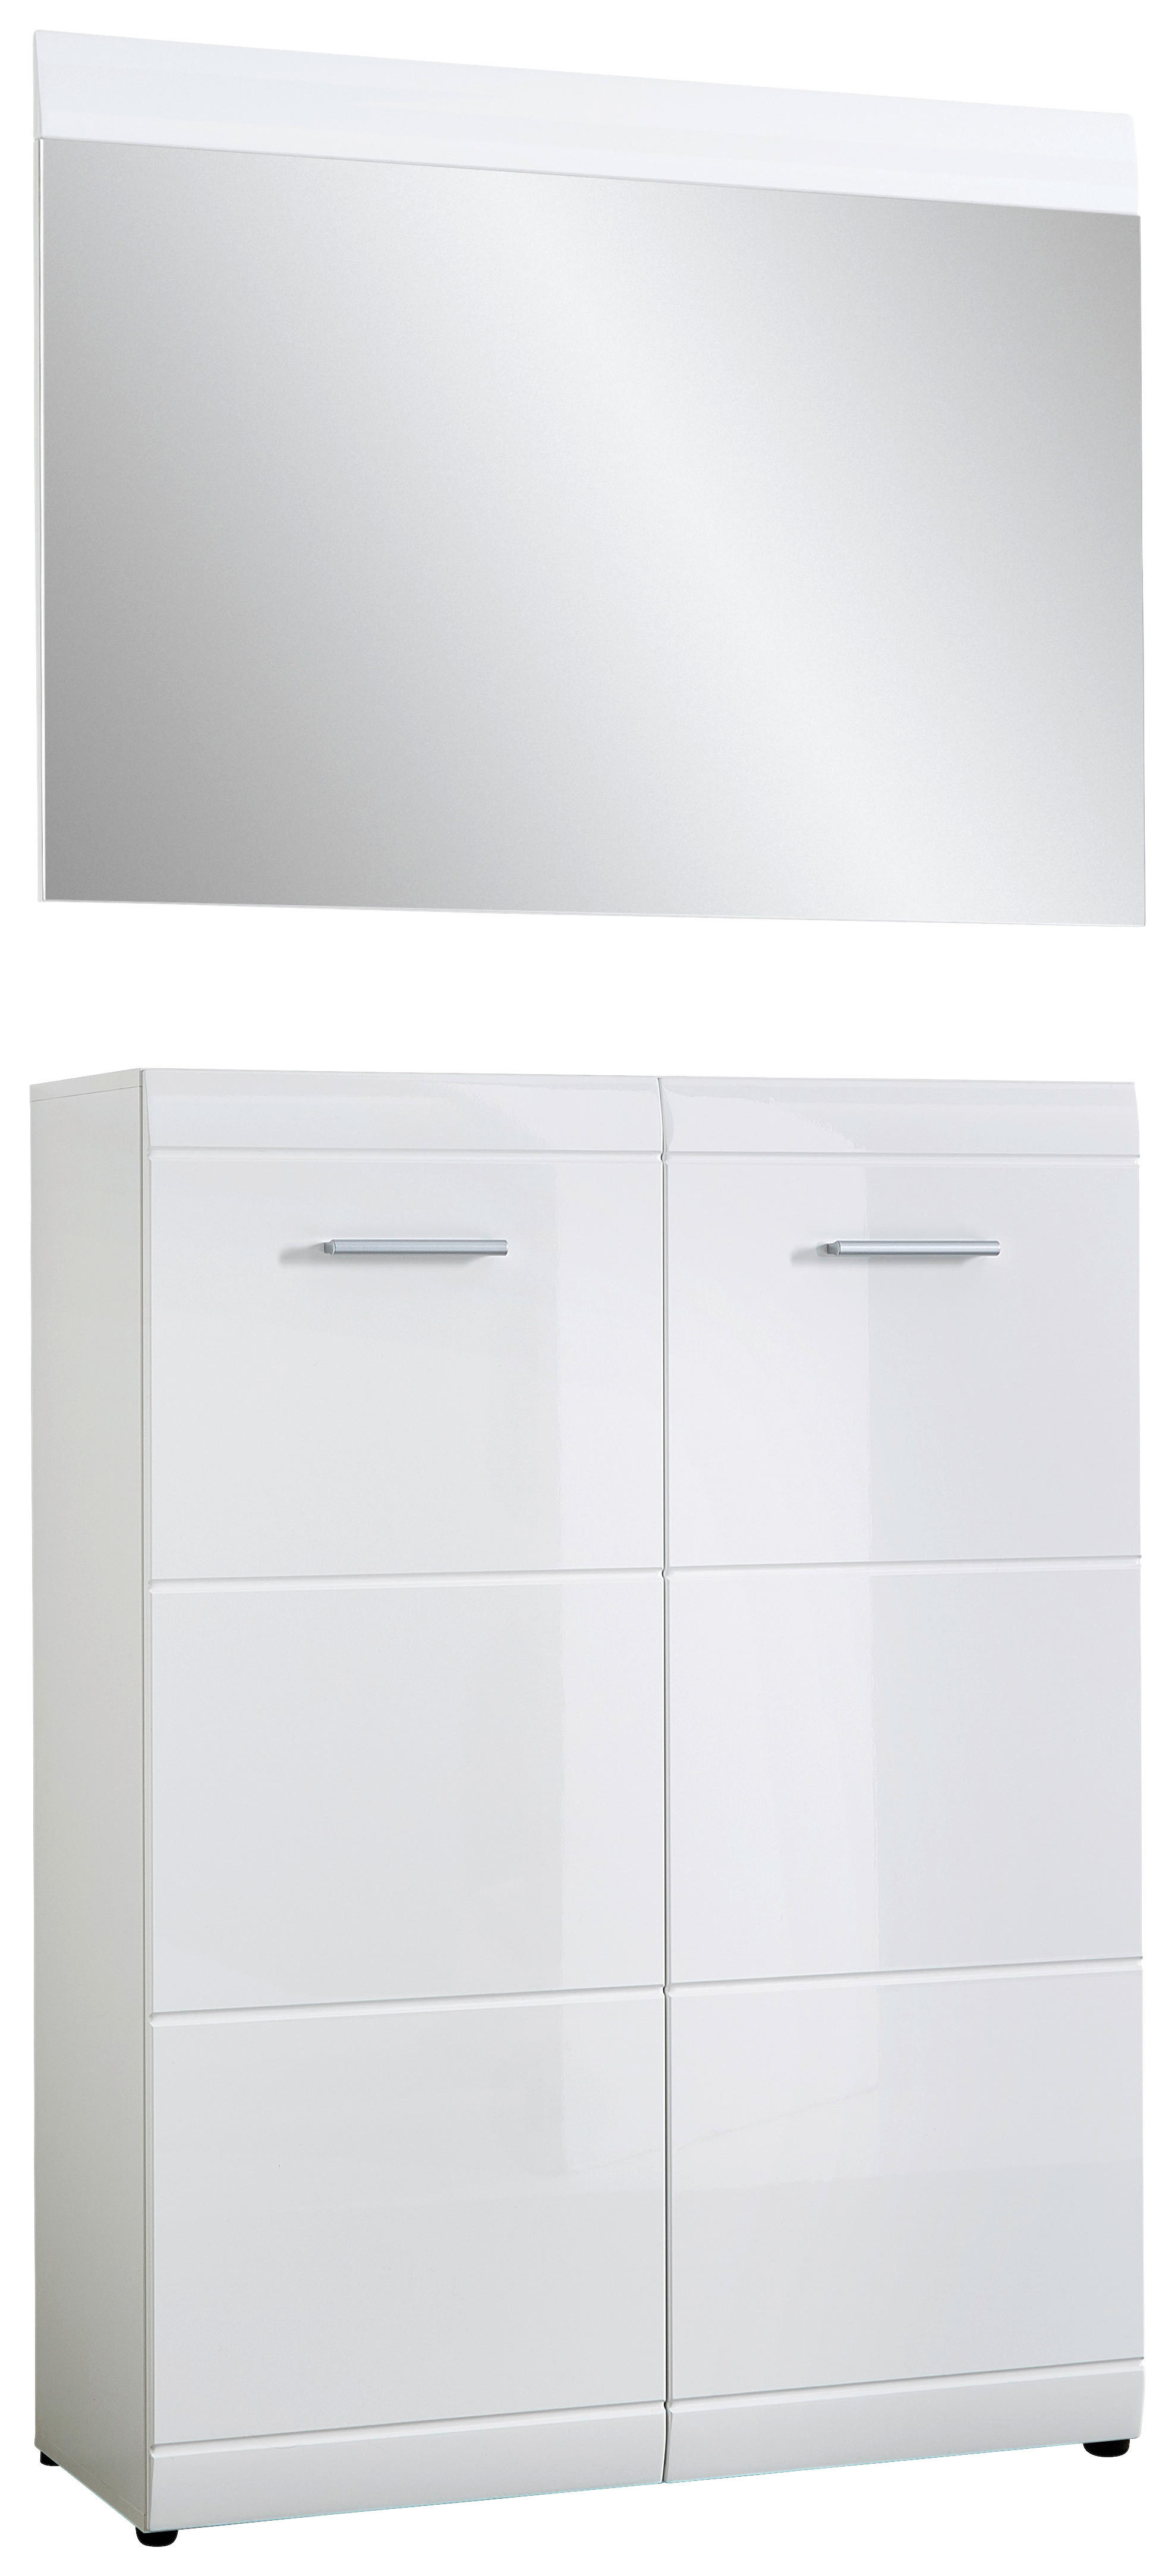 GARDEROBE Weiß  - Weiß, Design (90/200/39cm) - Carryhome